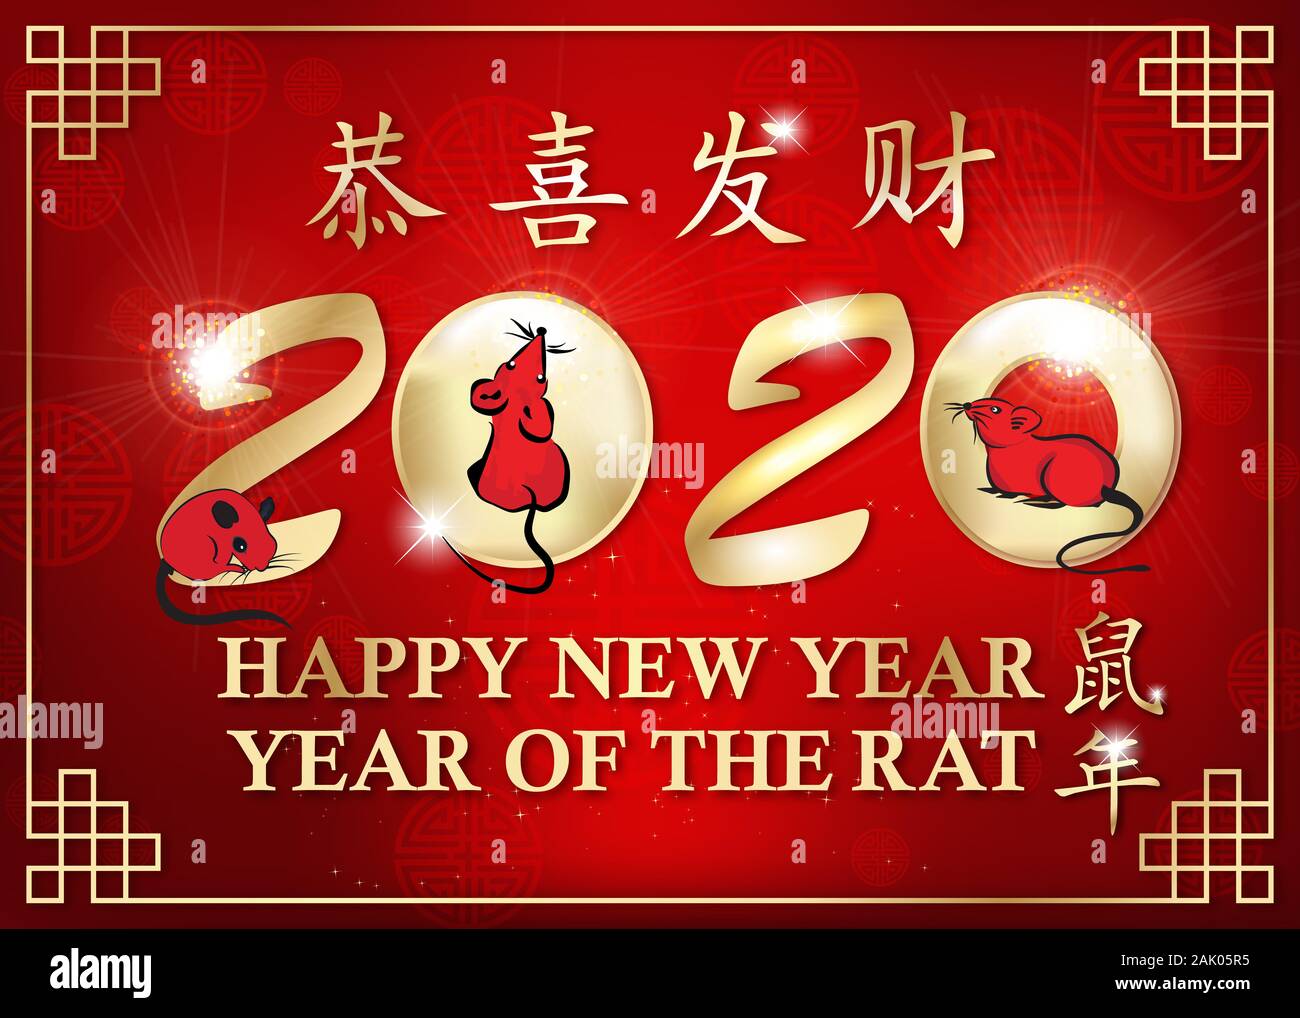 Rote chinesische Grußkarten mit Text in Englisch und Chinesisch: - Frohes Chinesisches Neues Jahr der Ratte 2020! Stockfoto